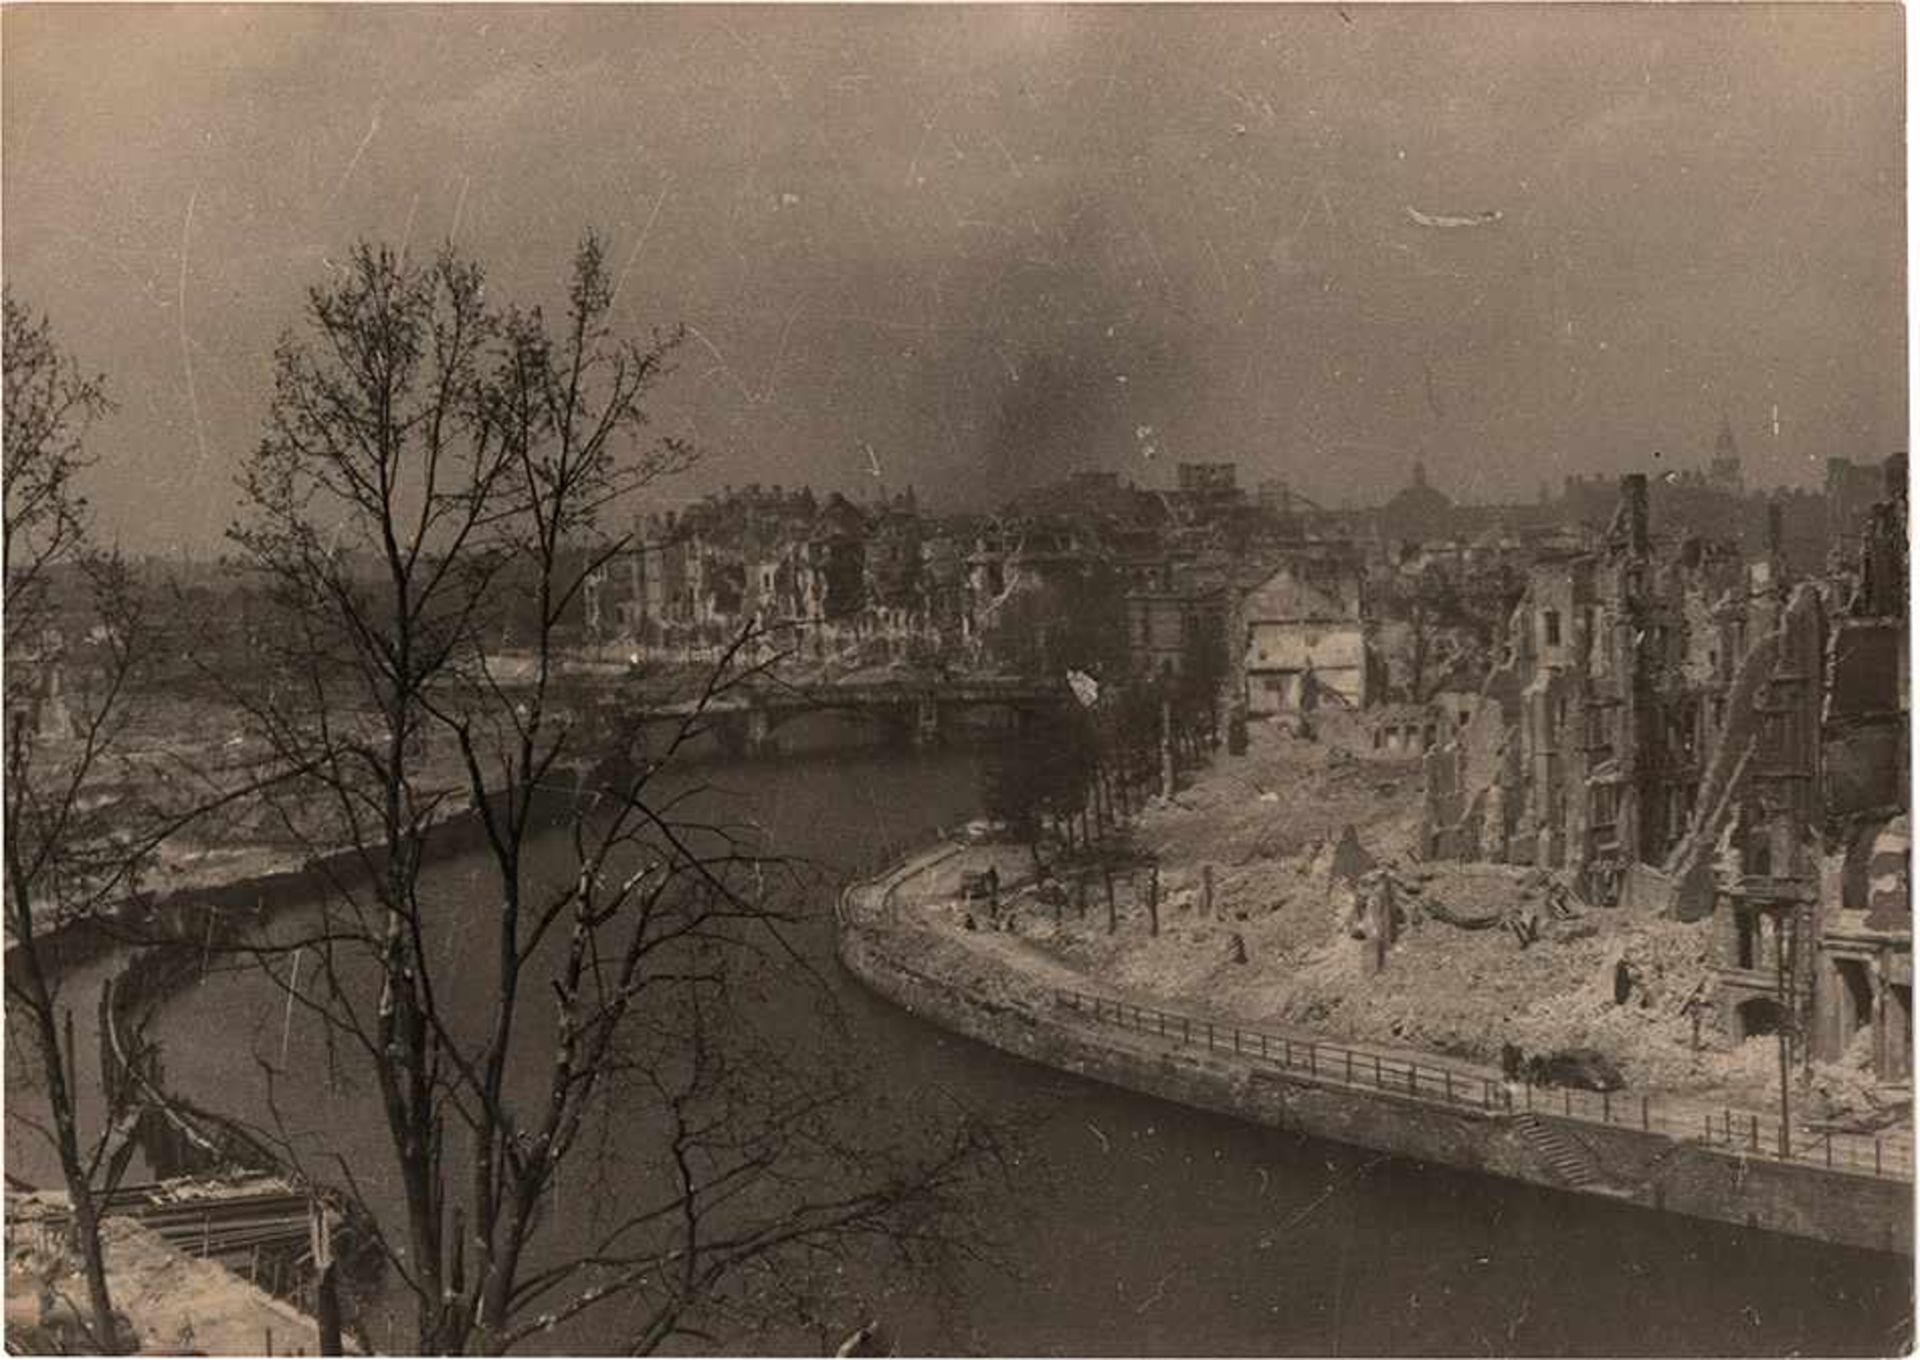 Acht Fotos von Berlin, Frühling-Sommer 1945.UdSSR. Kiew, 1946. Größe 12,8 x 17,8 cm. Abgebildet sind